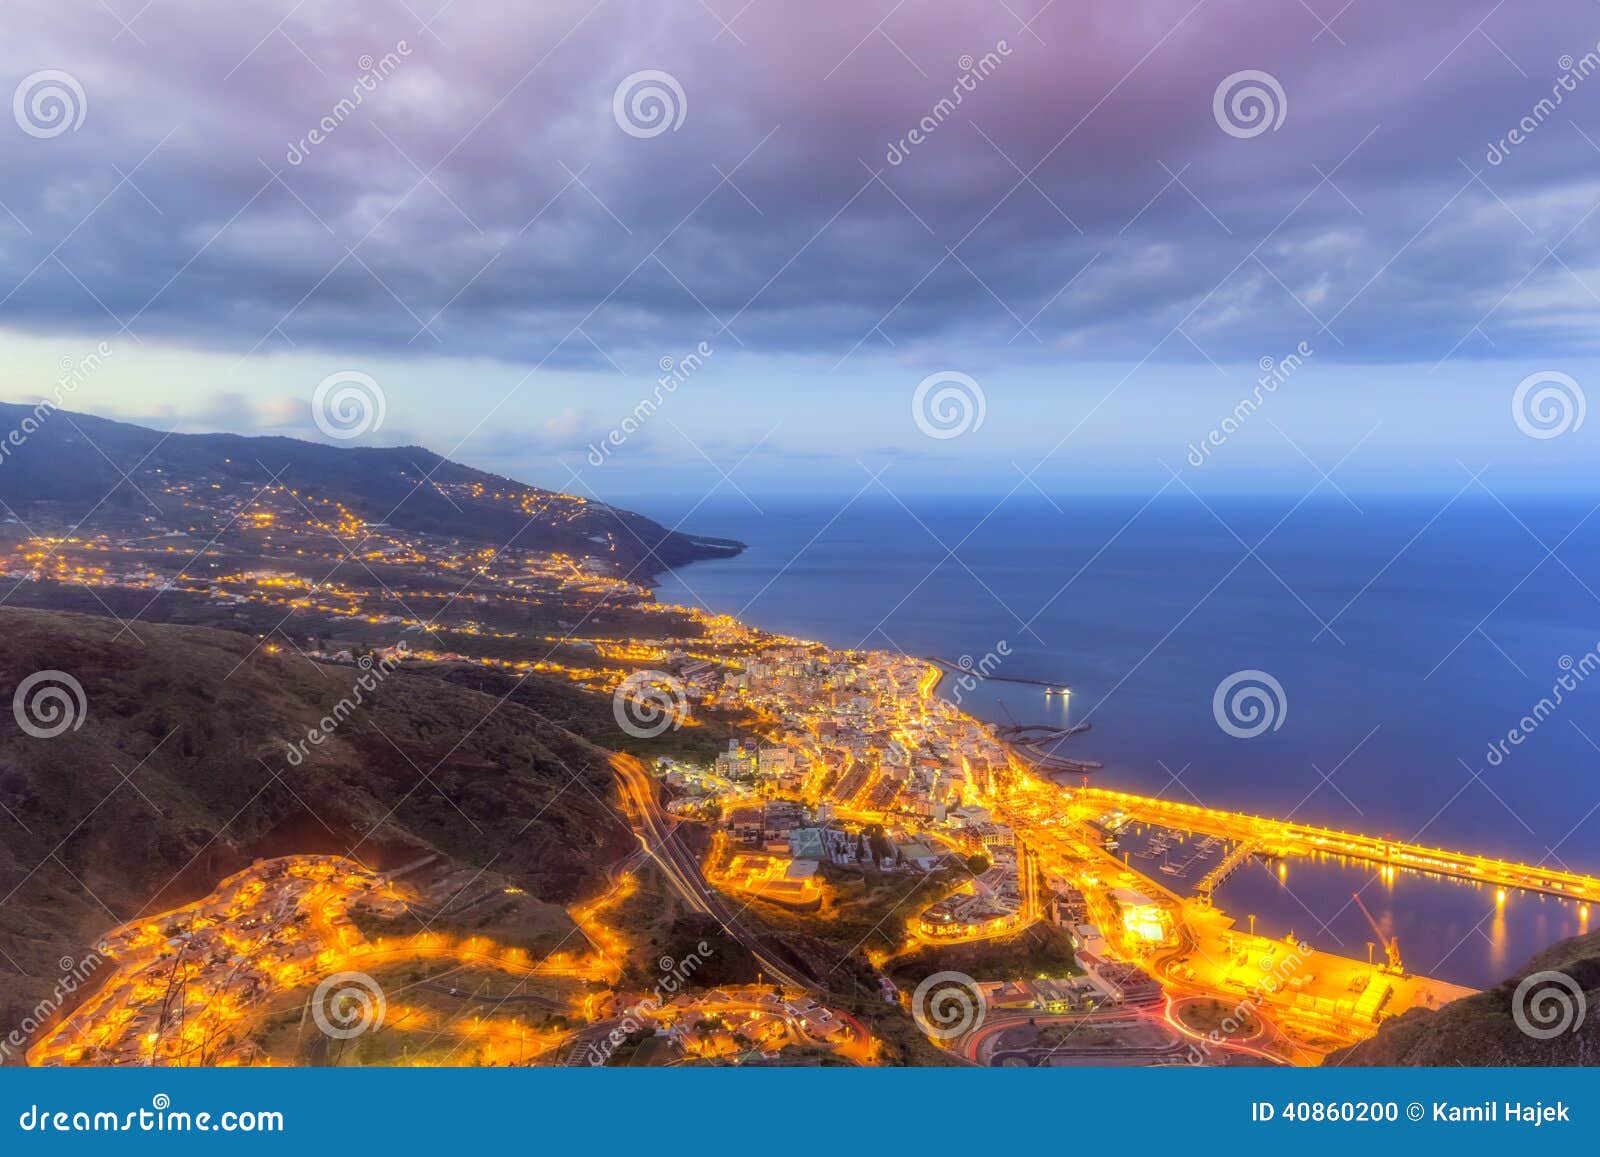 Santa Cruz Night Captial City van La Palma. Luchtcityl ights bij schemering van santa cruz, het kapitaal van La-palma, één van de kanarieeilanden, in hdr